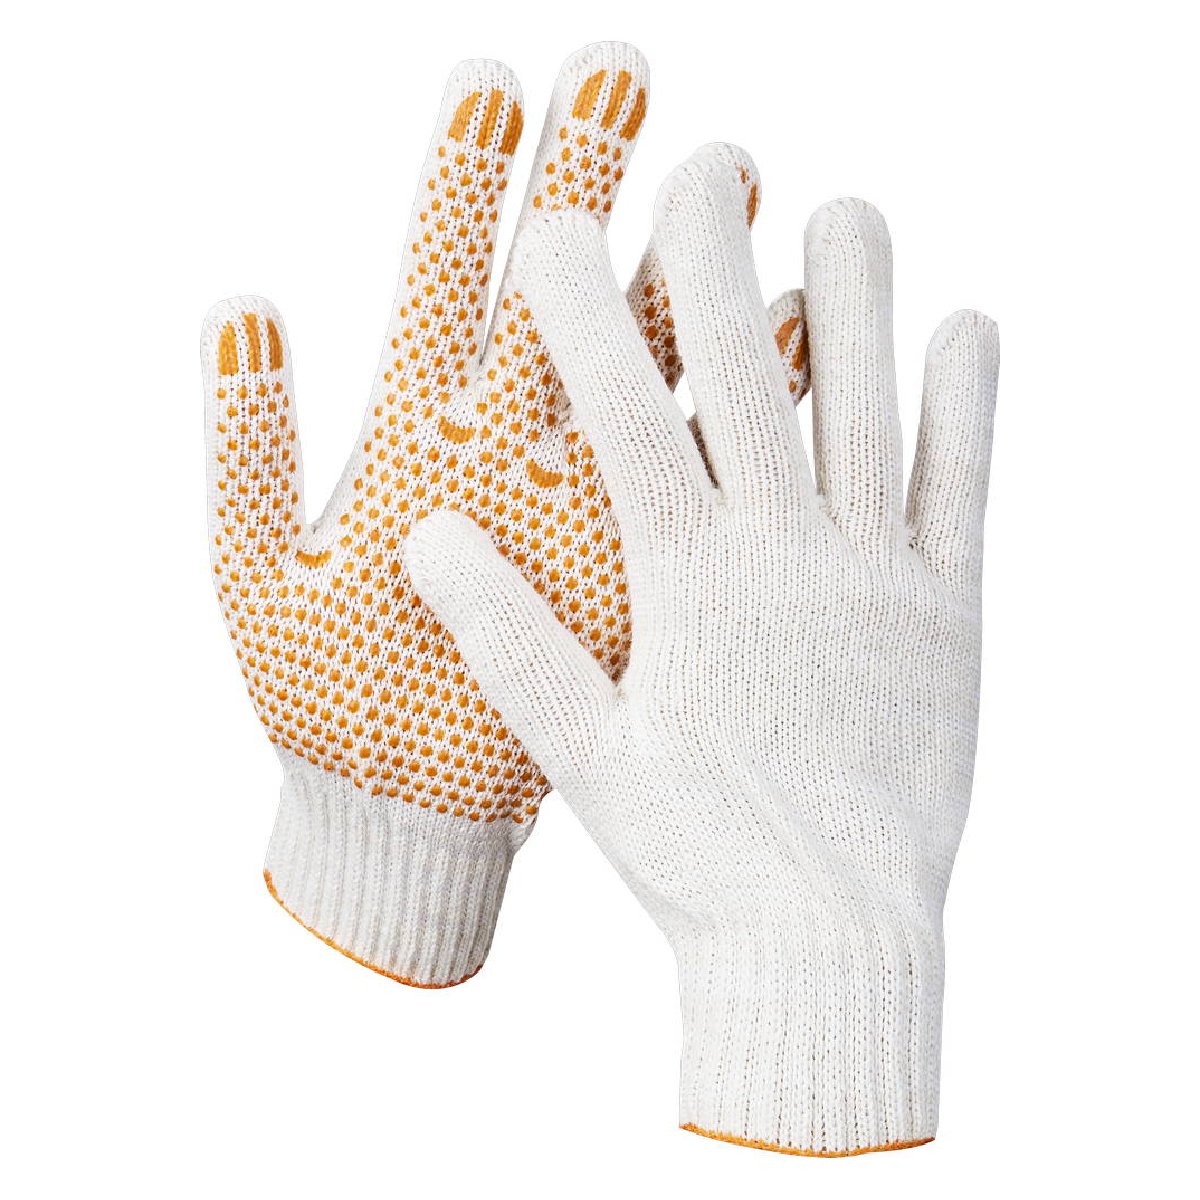 Трикотажные перчатки STAYER Rigid р. L-XL для тяжелых работ с ПВХ-гель покрытием (11404-XL)Купить